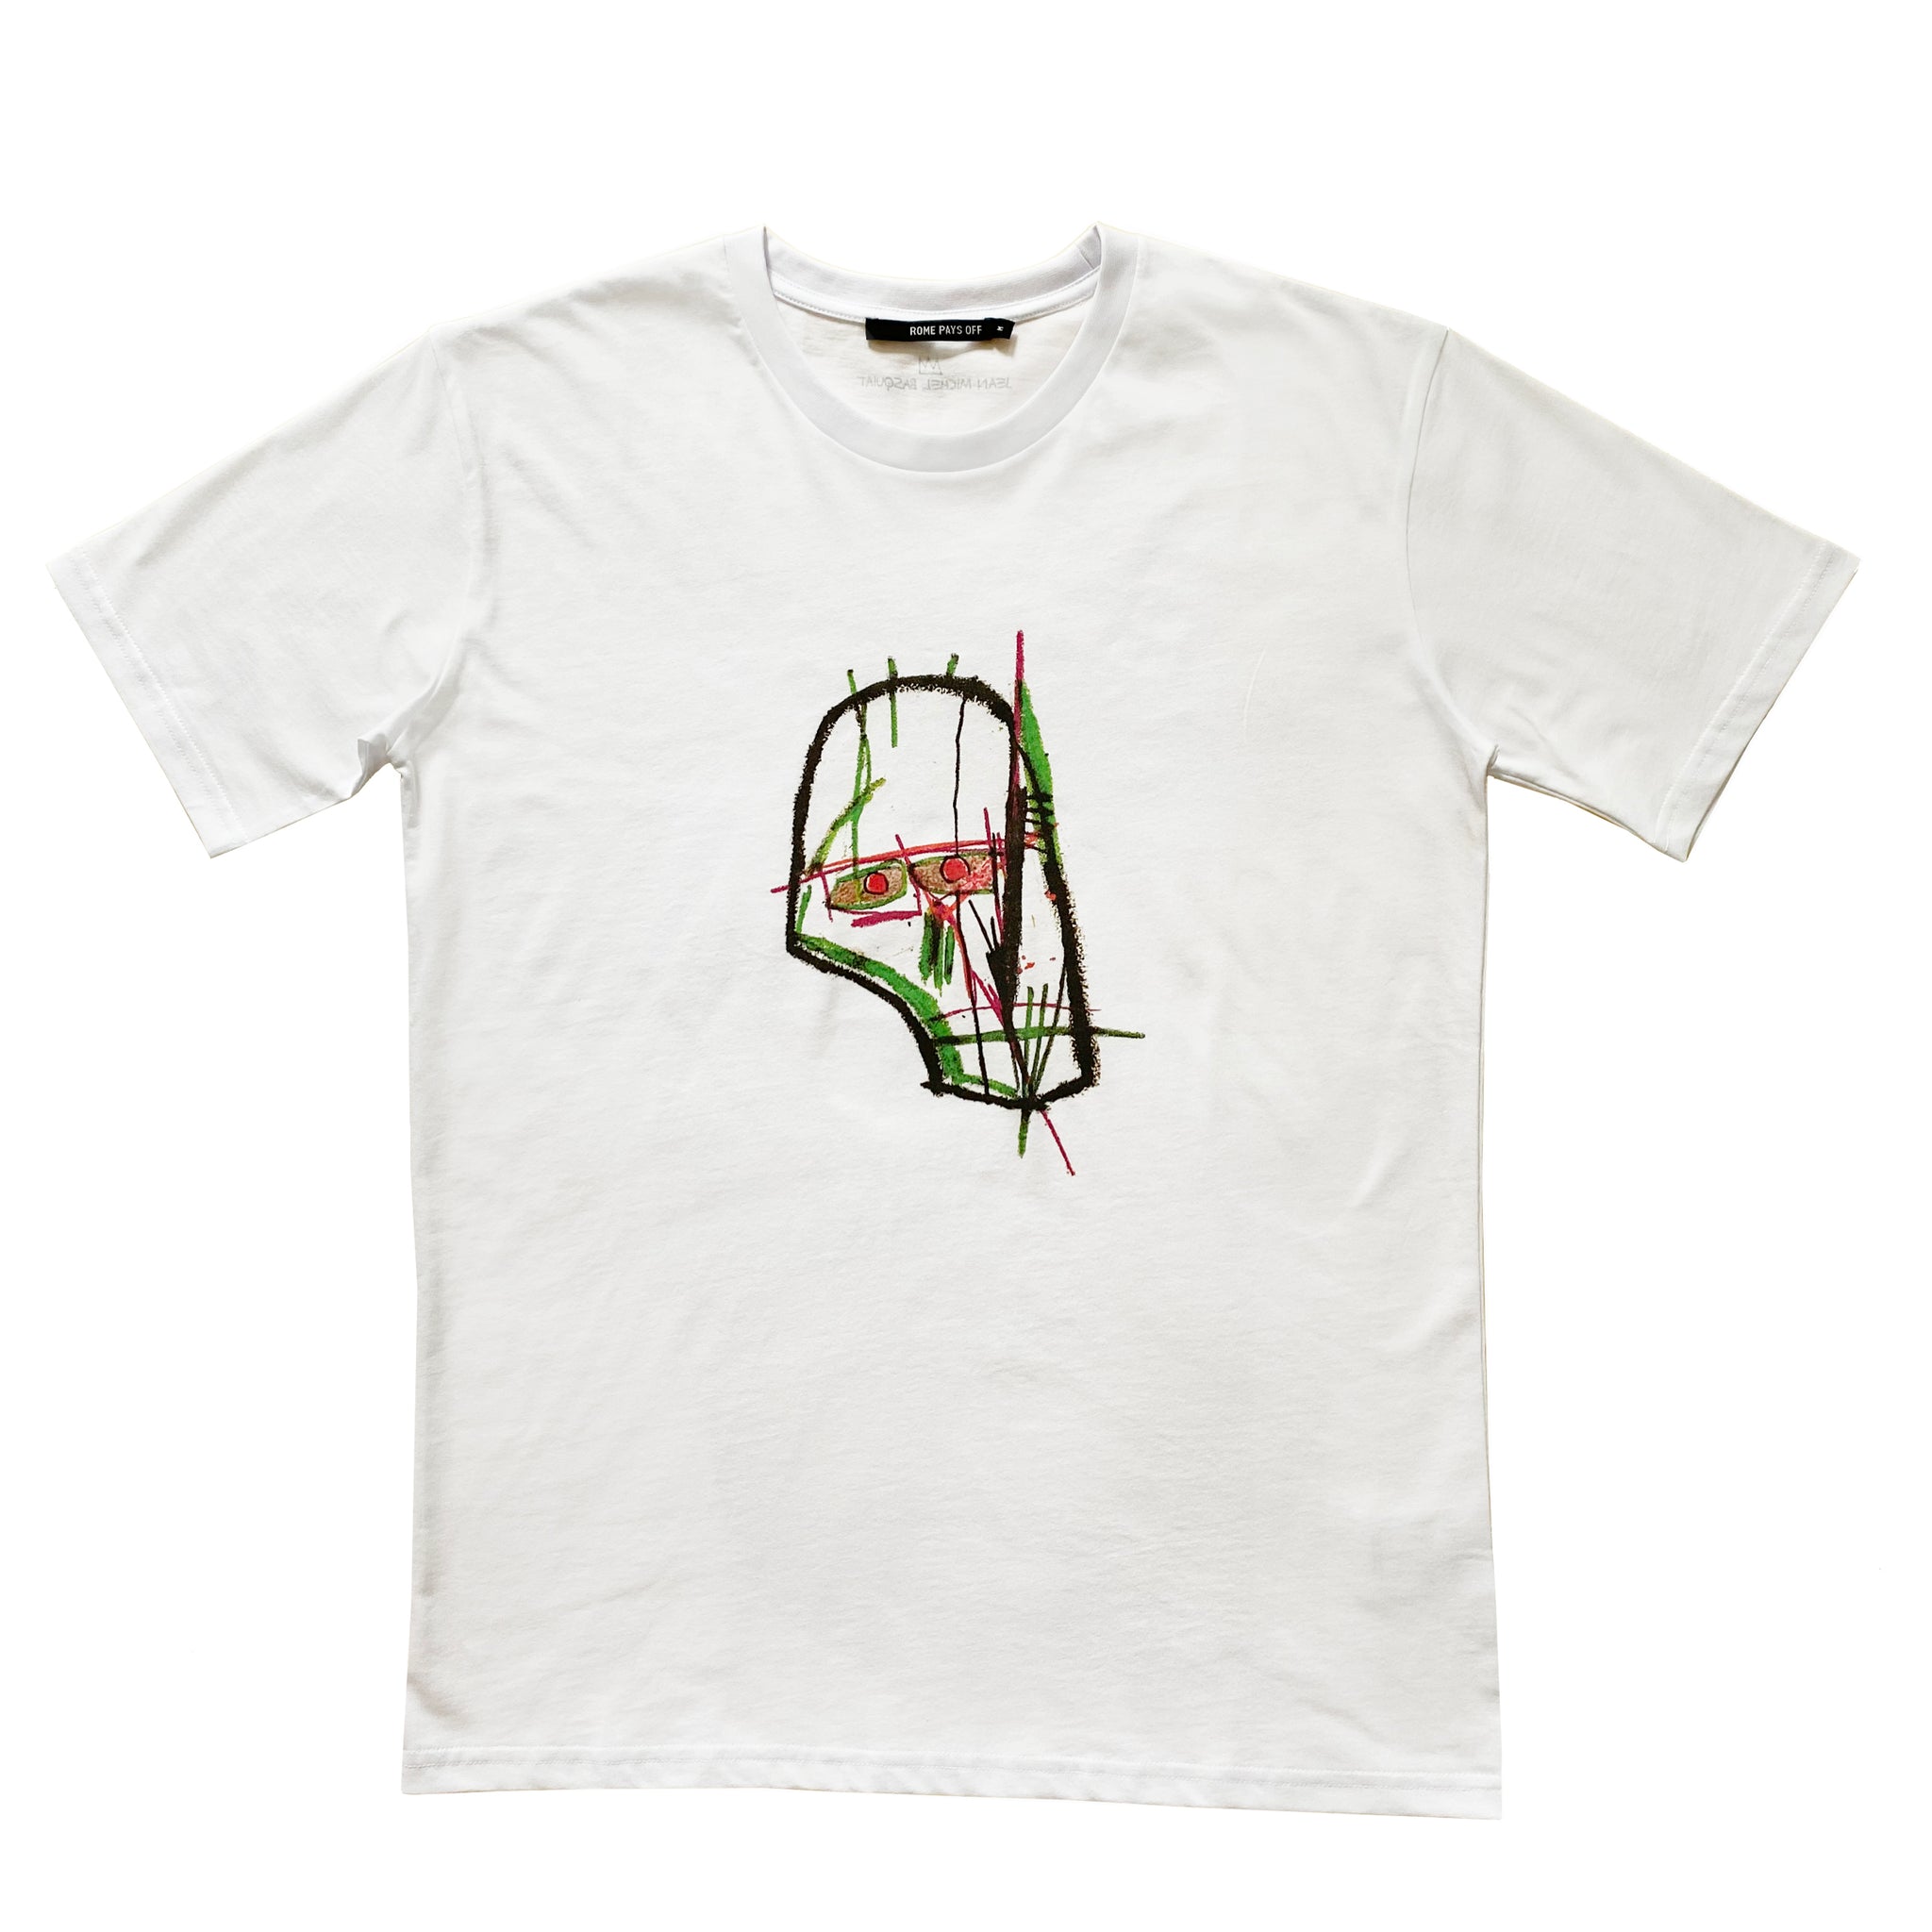 Basquiat "Skull" Short Sleeve (Adult)